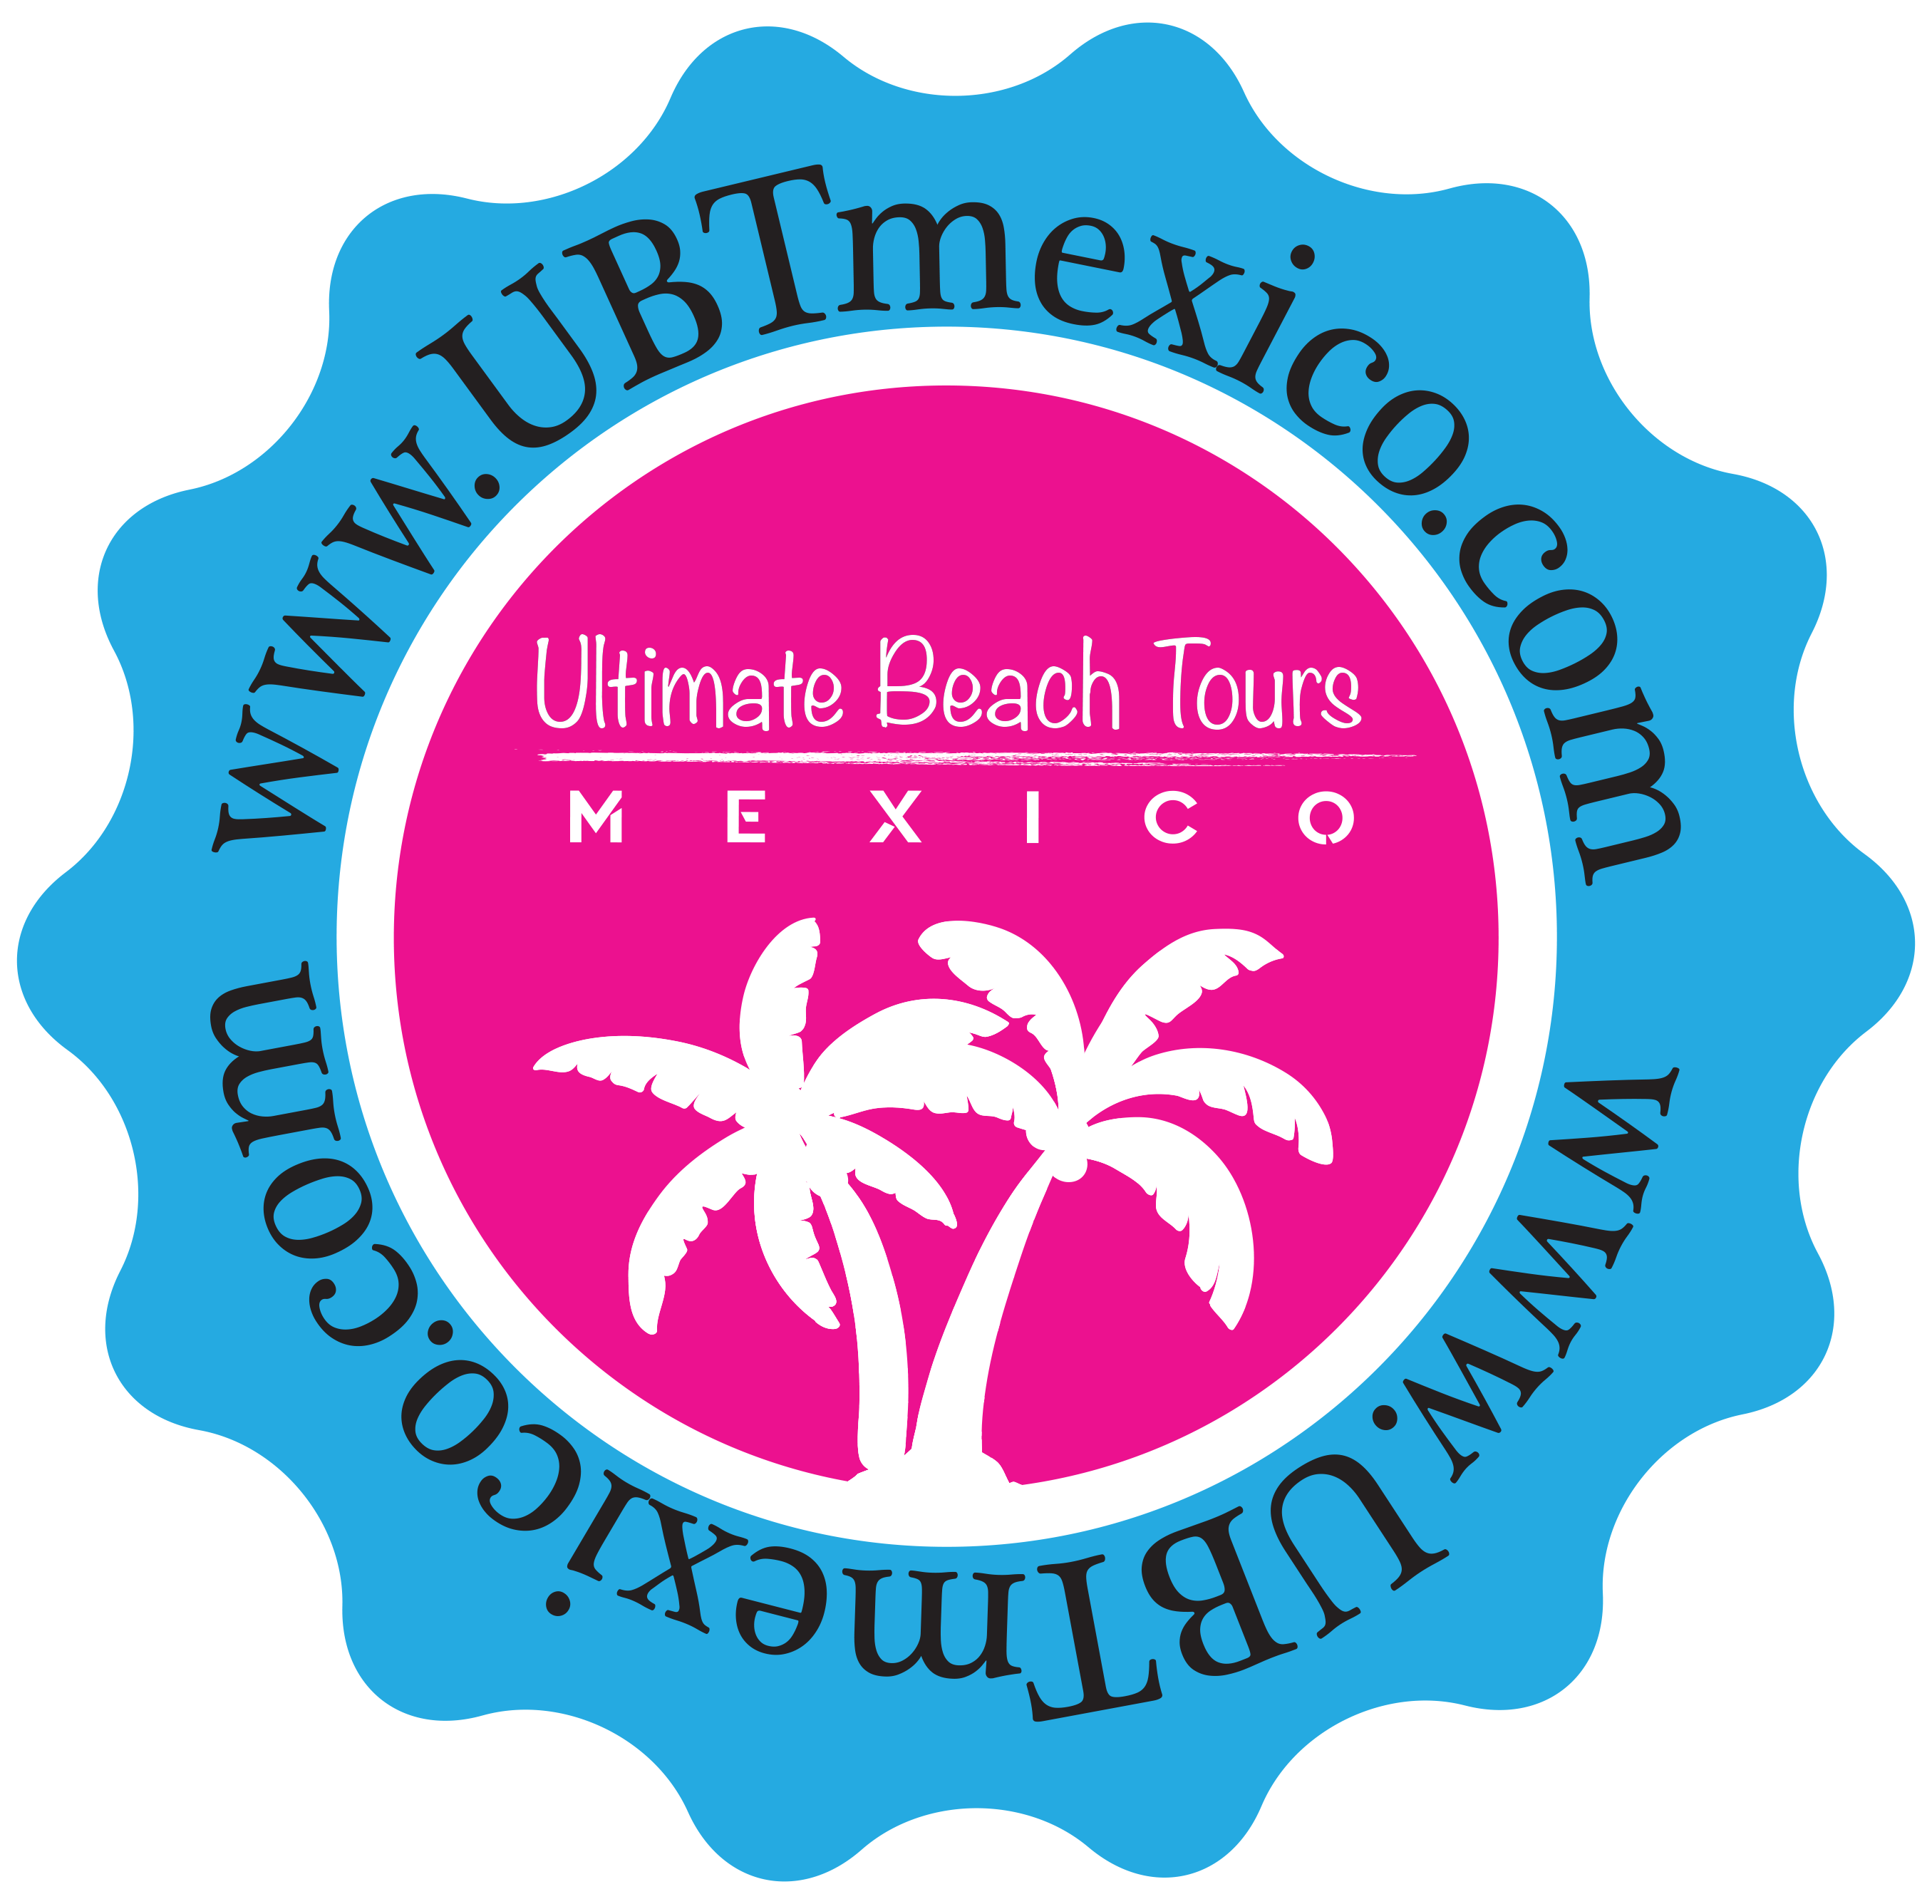 UBT Mexico